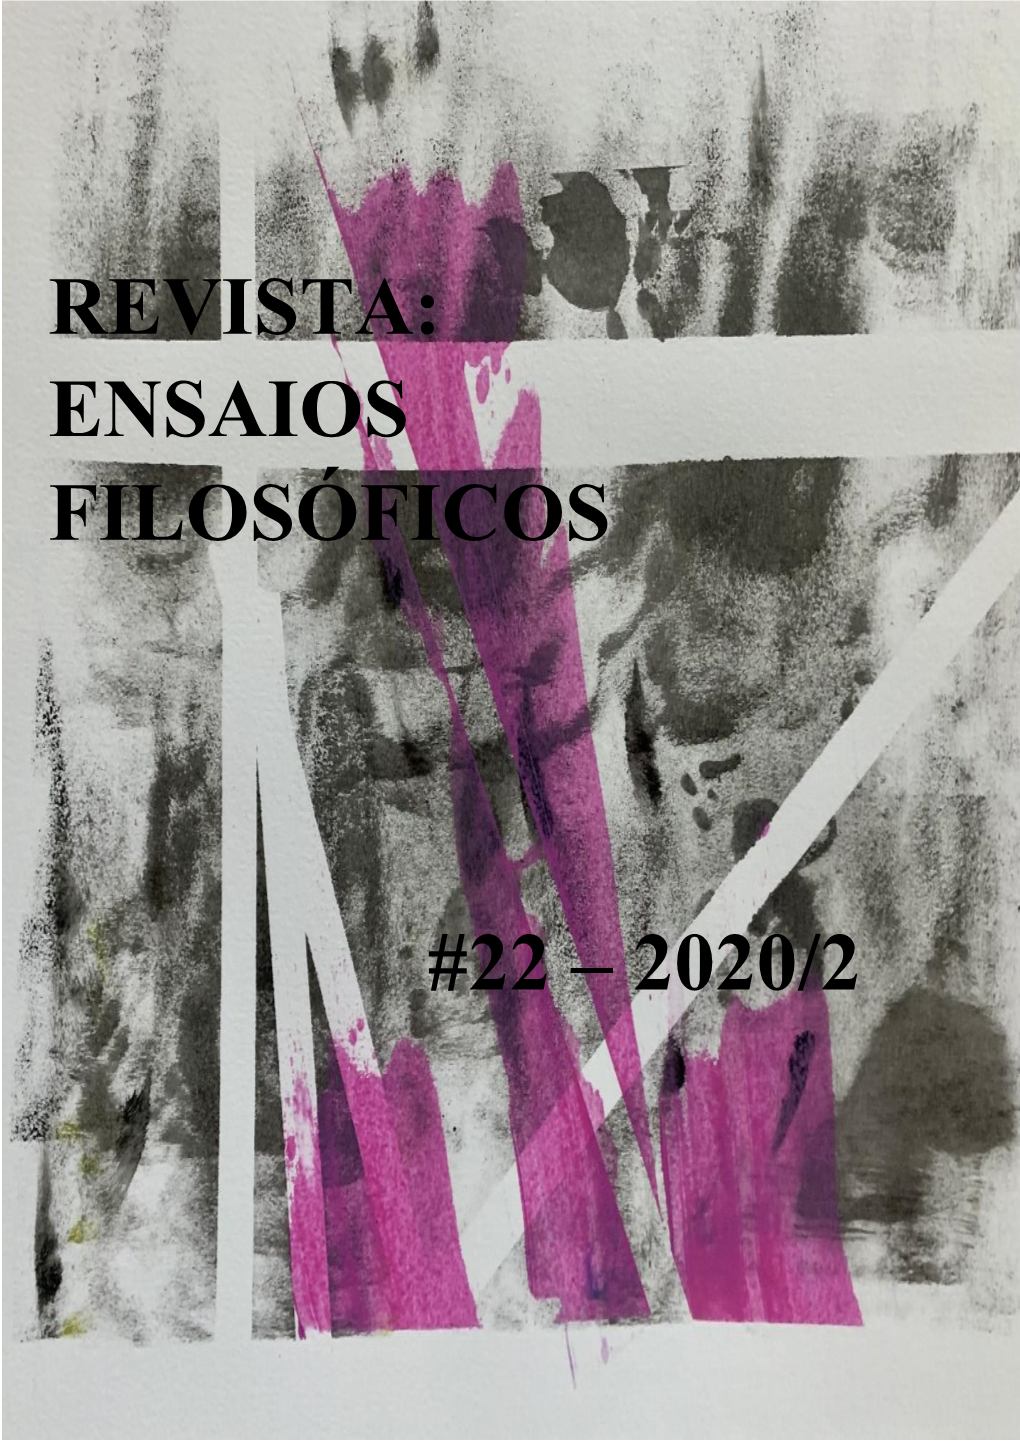 Revista: Ensaios Filosóficos #22 – 2020/2